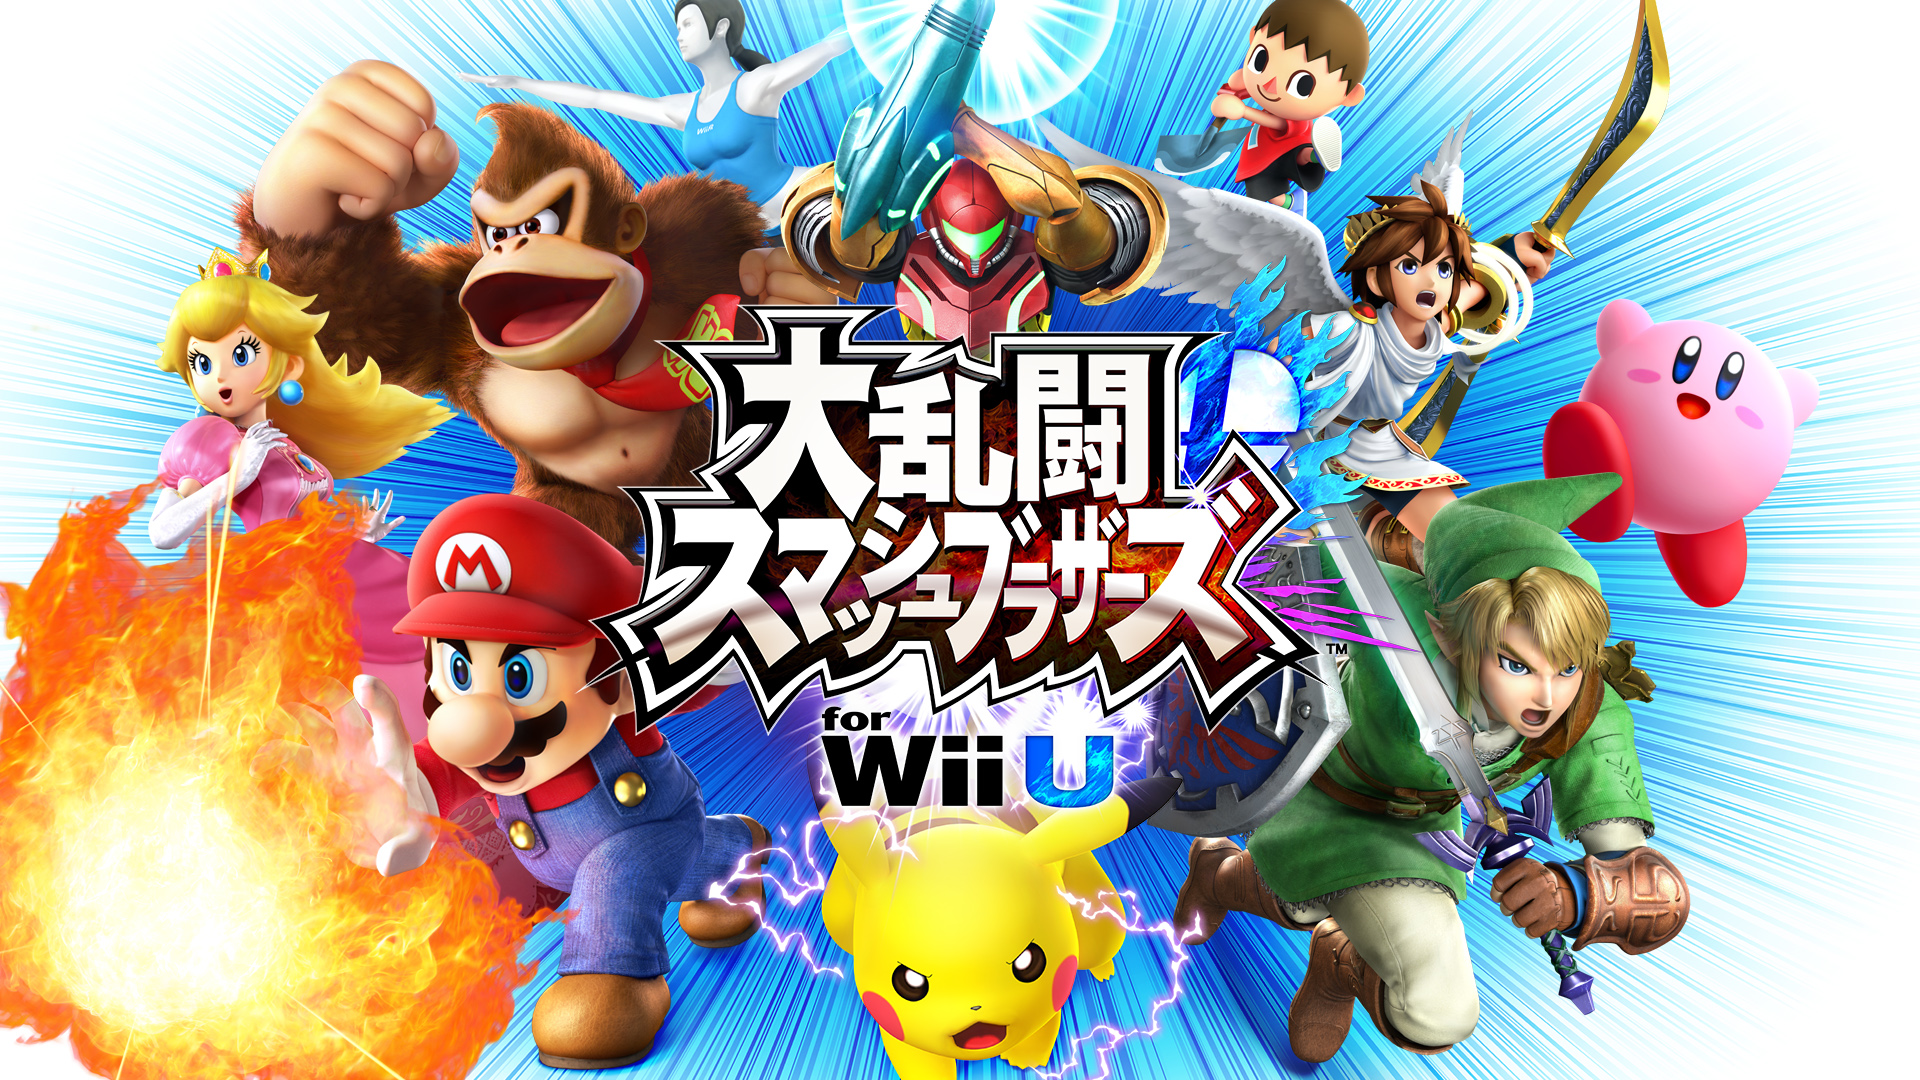 【スマブラ】桜井政博氏がMiiverseに投稿した「きょうの一枚」まとめ【大乱闘スマッシュブラザーズ for Nintendo 3DS / Wii U】